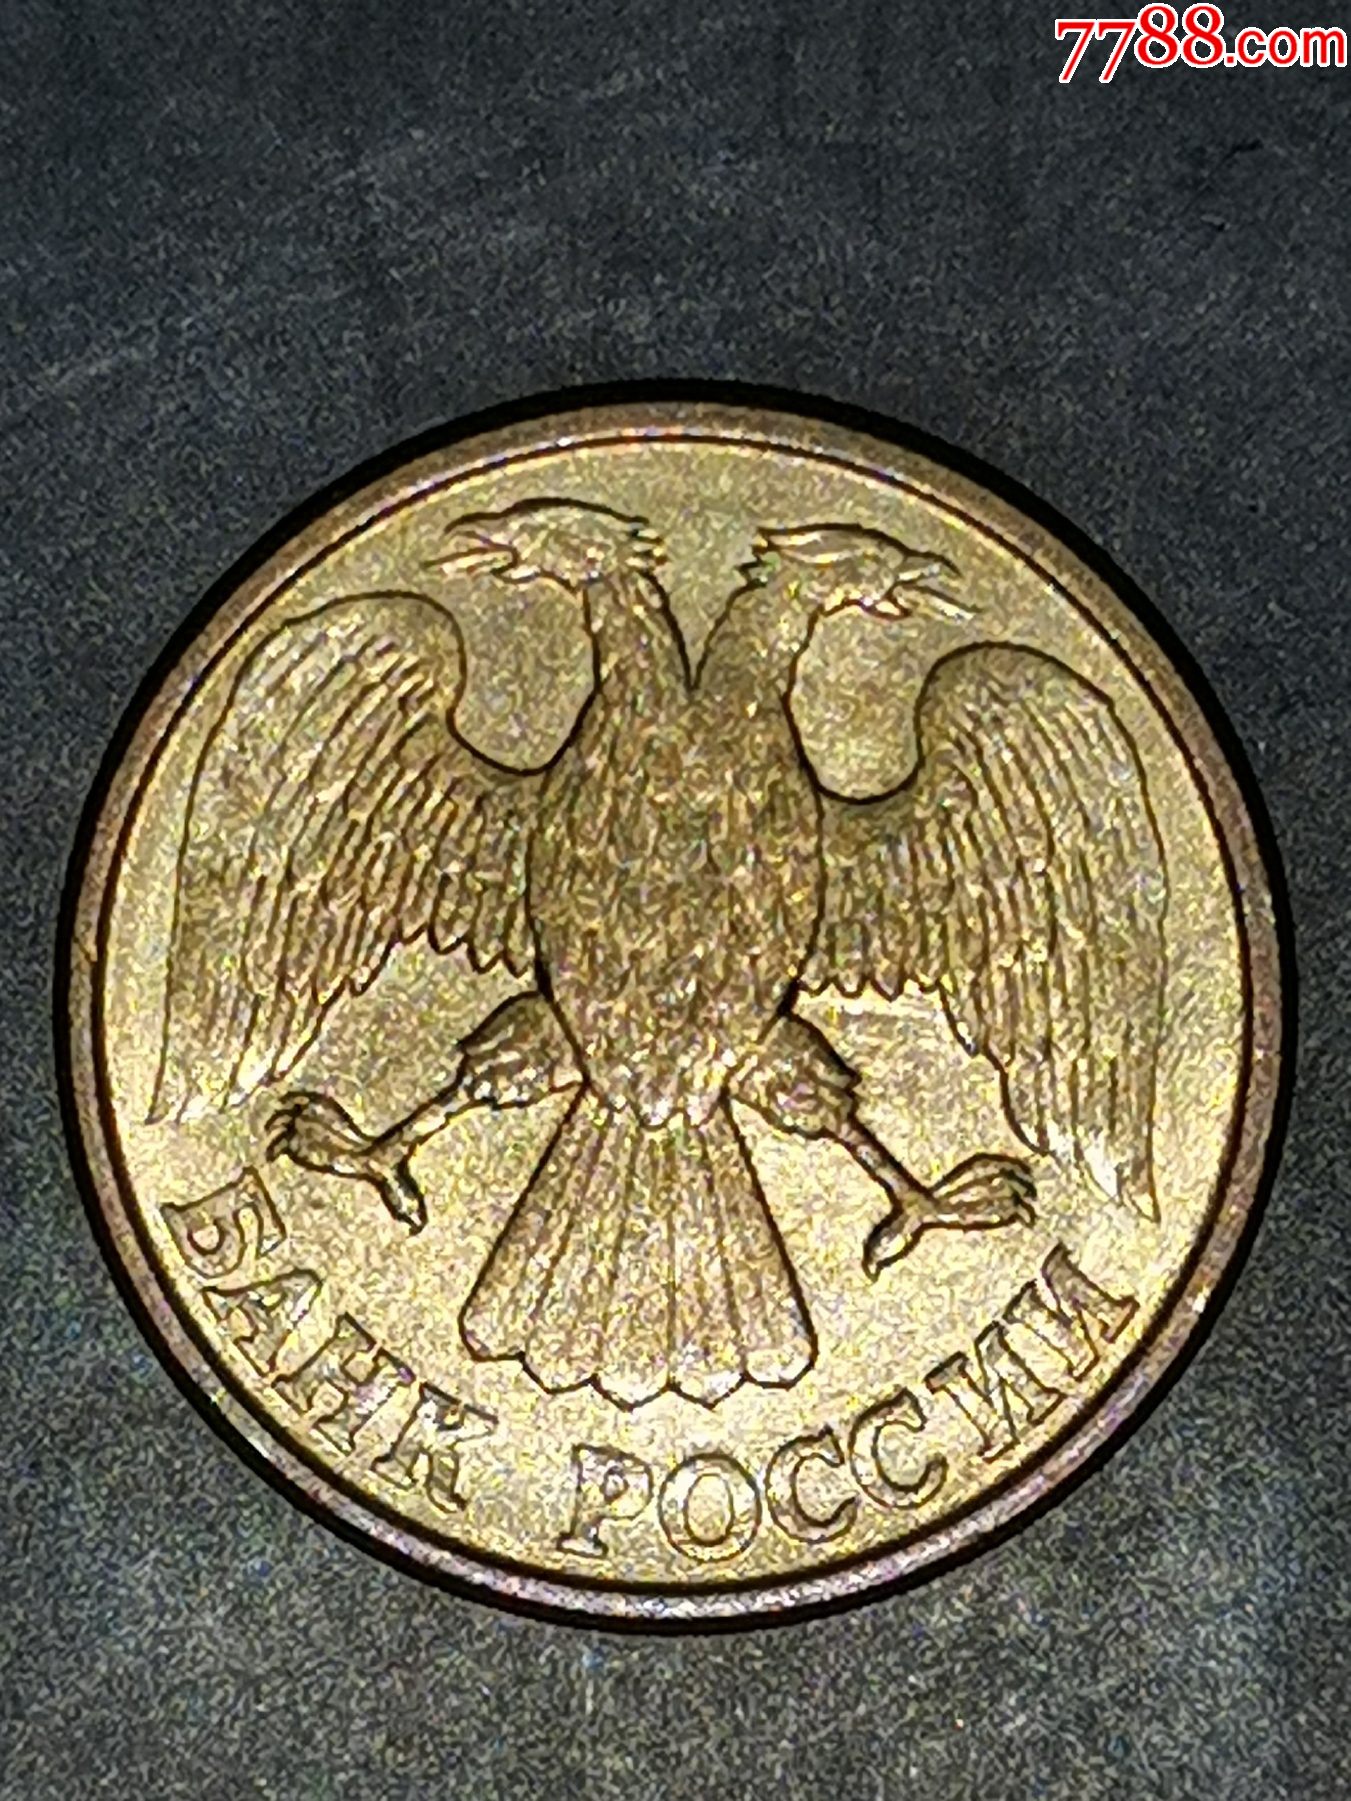 俄罗斯硬币1992年图片